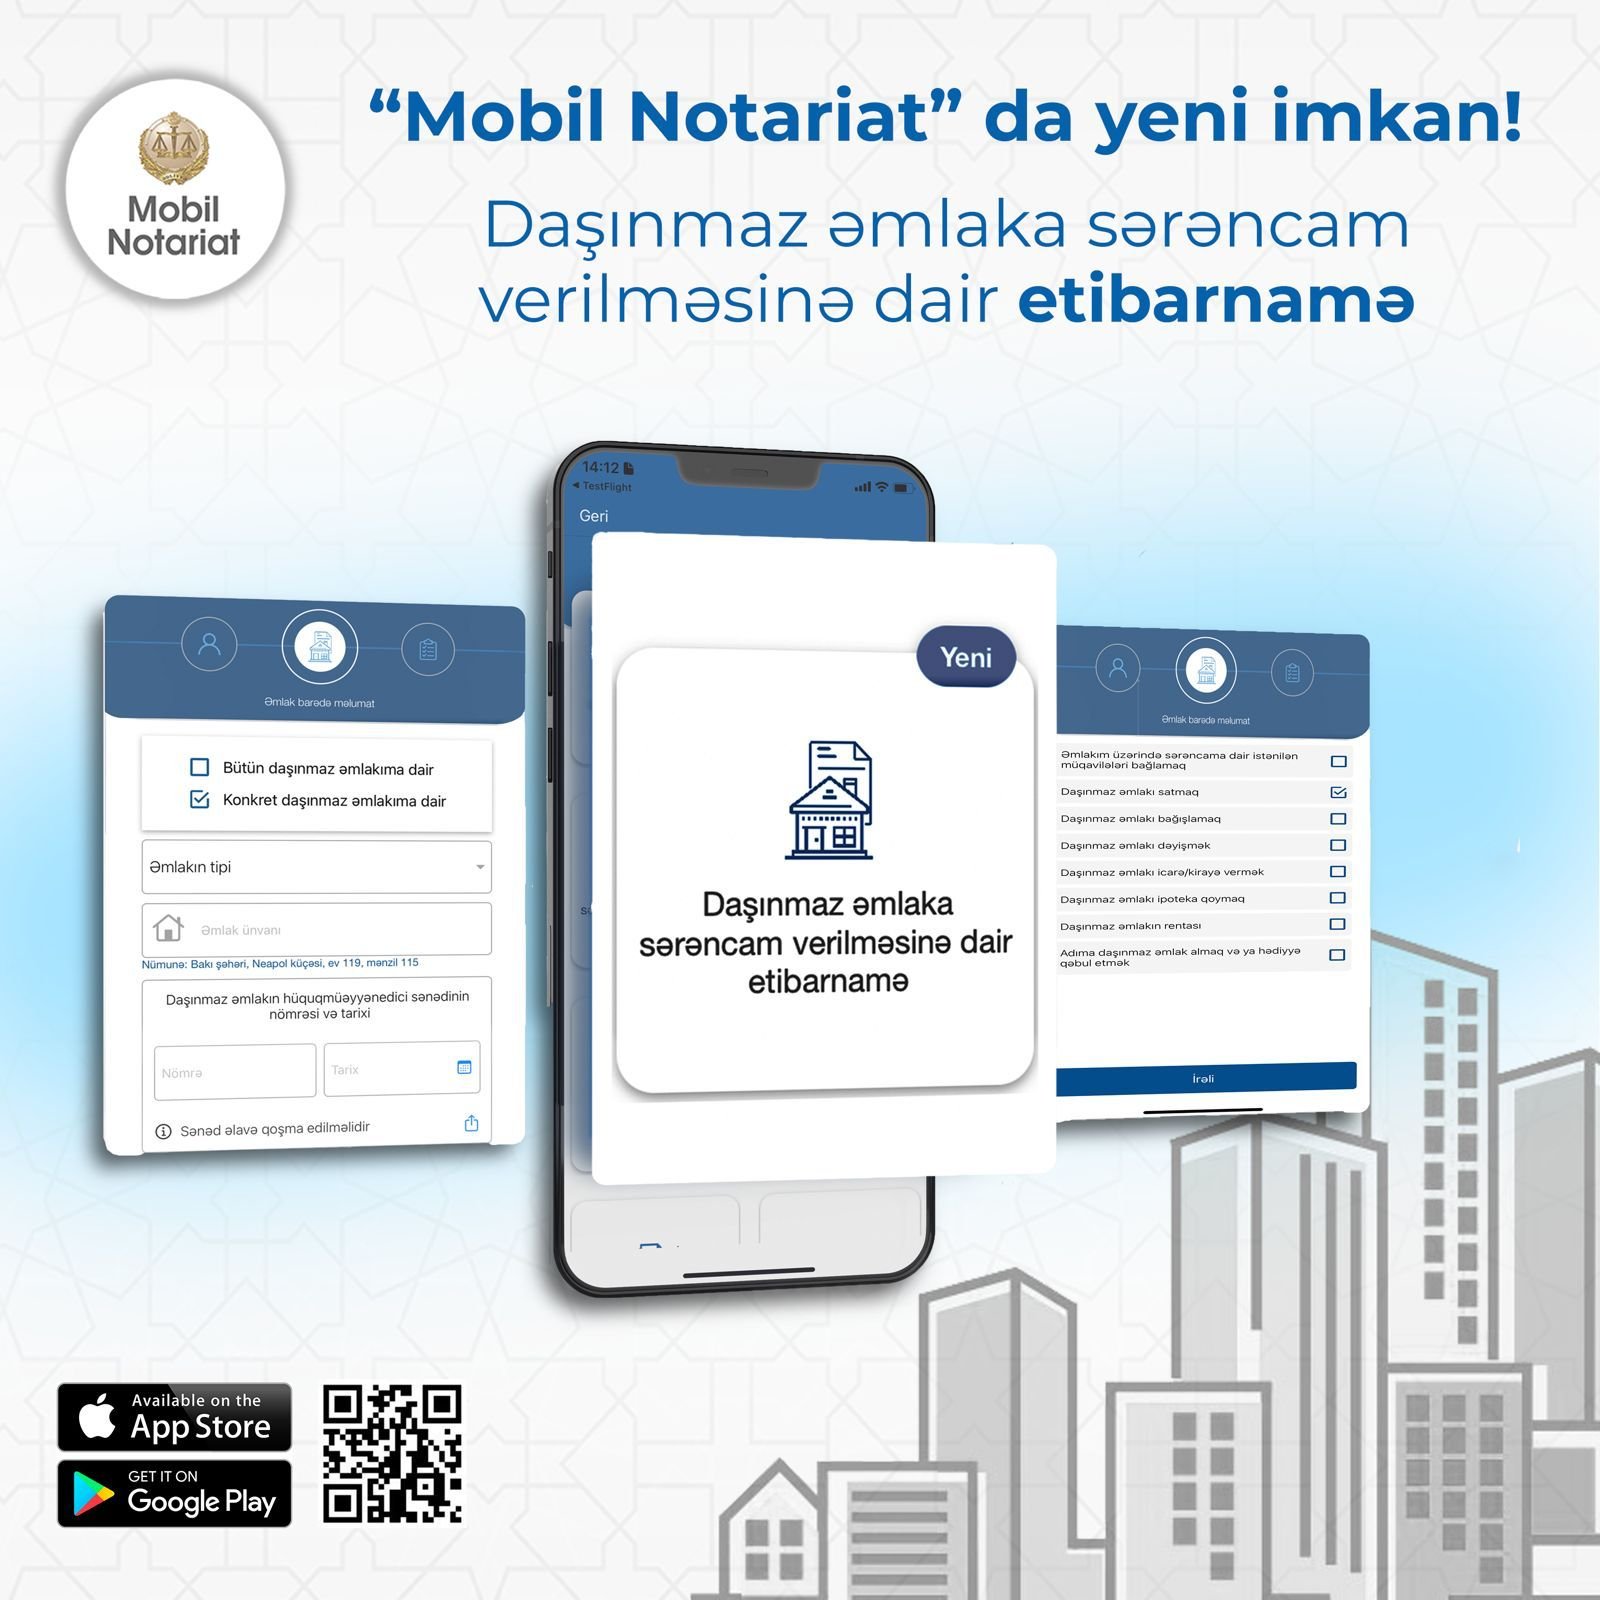 "Mobil notariat"da YENİLİK!